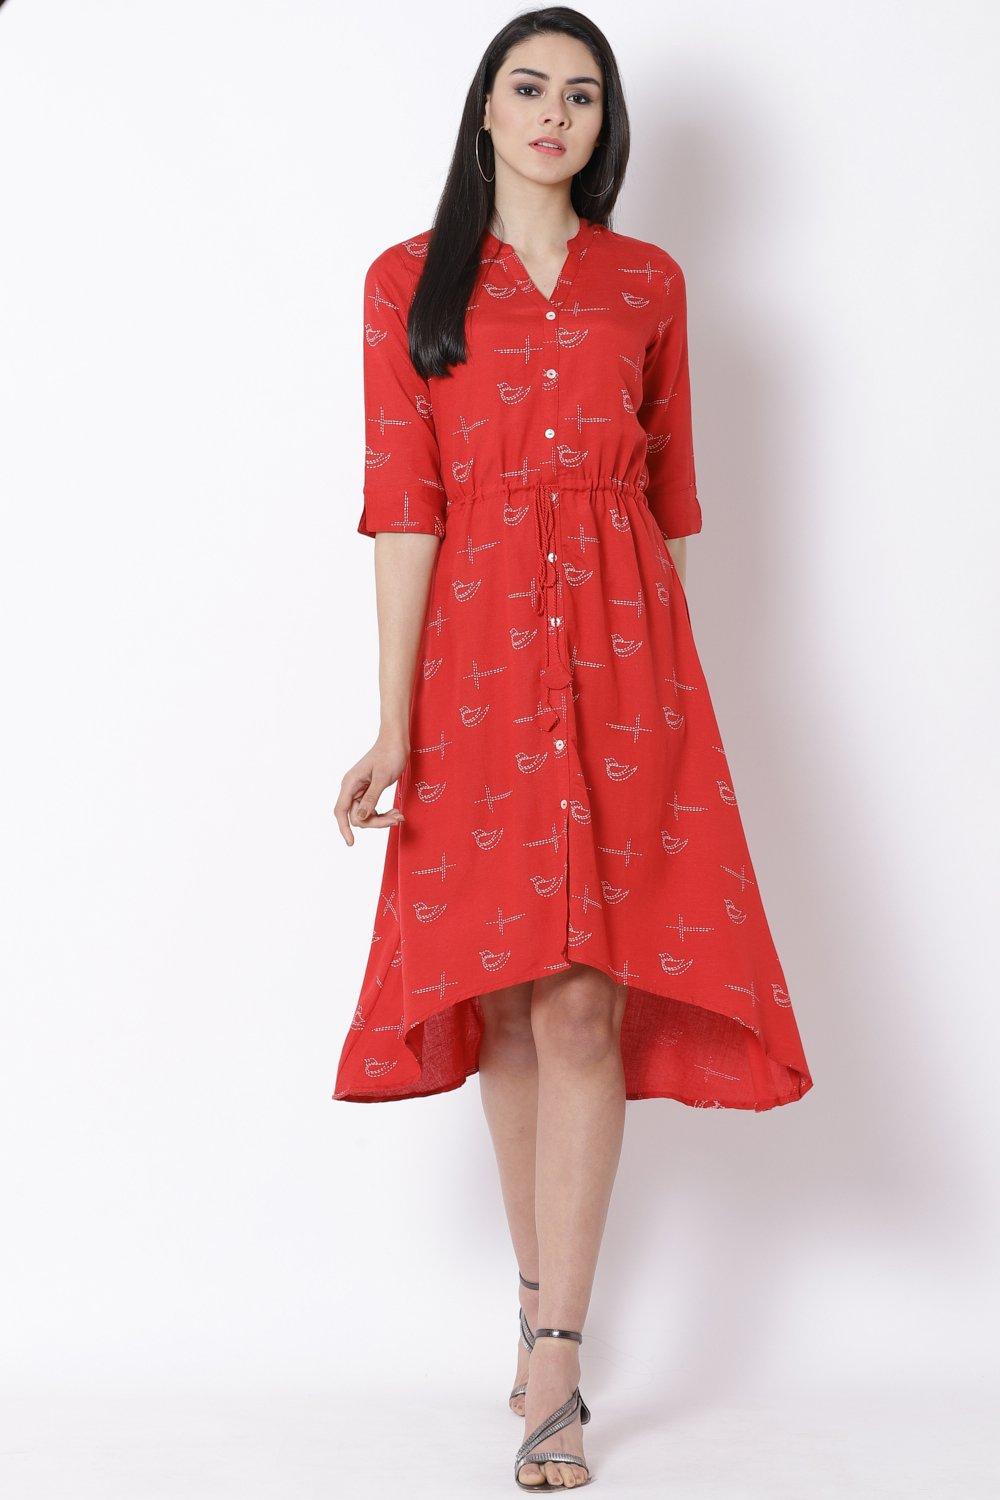 Wish-list: Red Dress